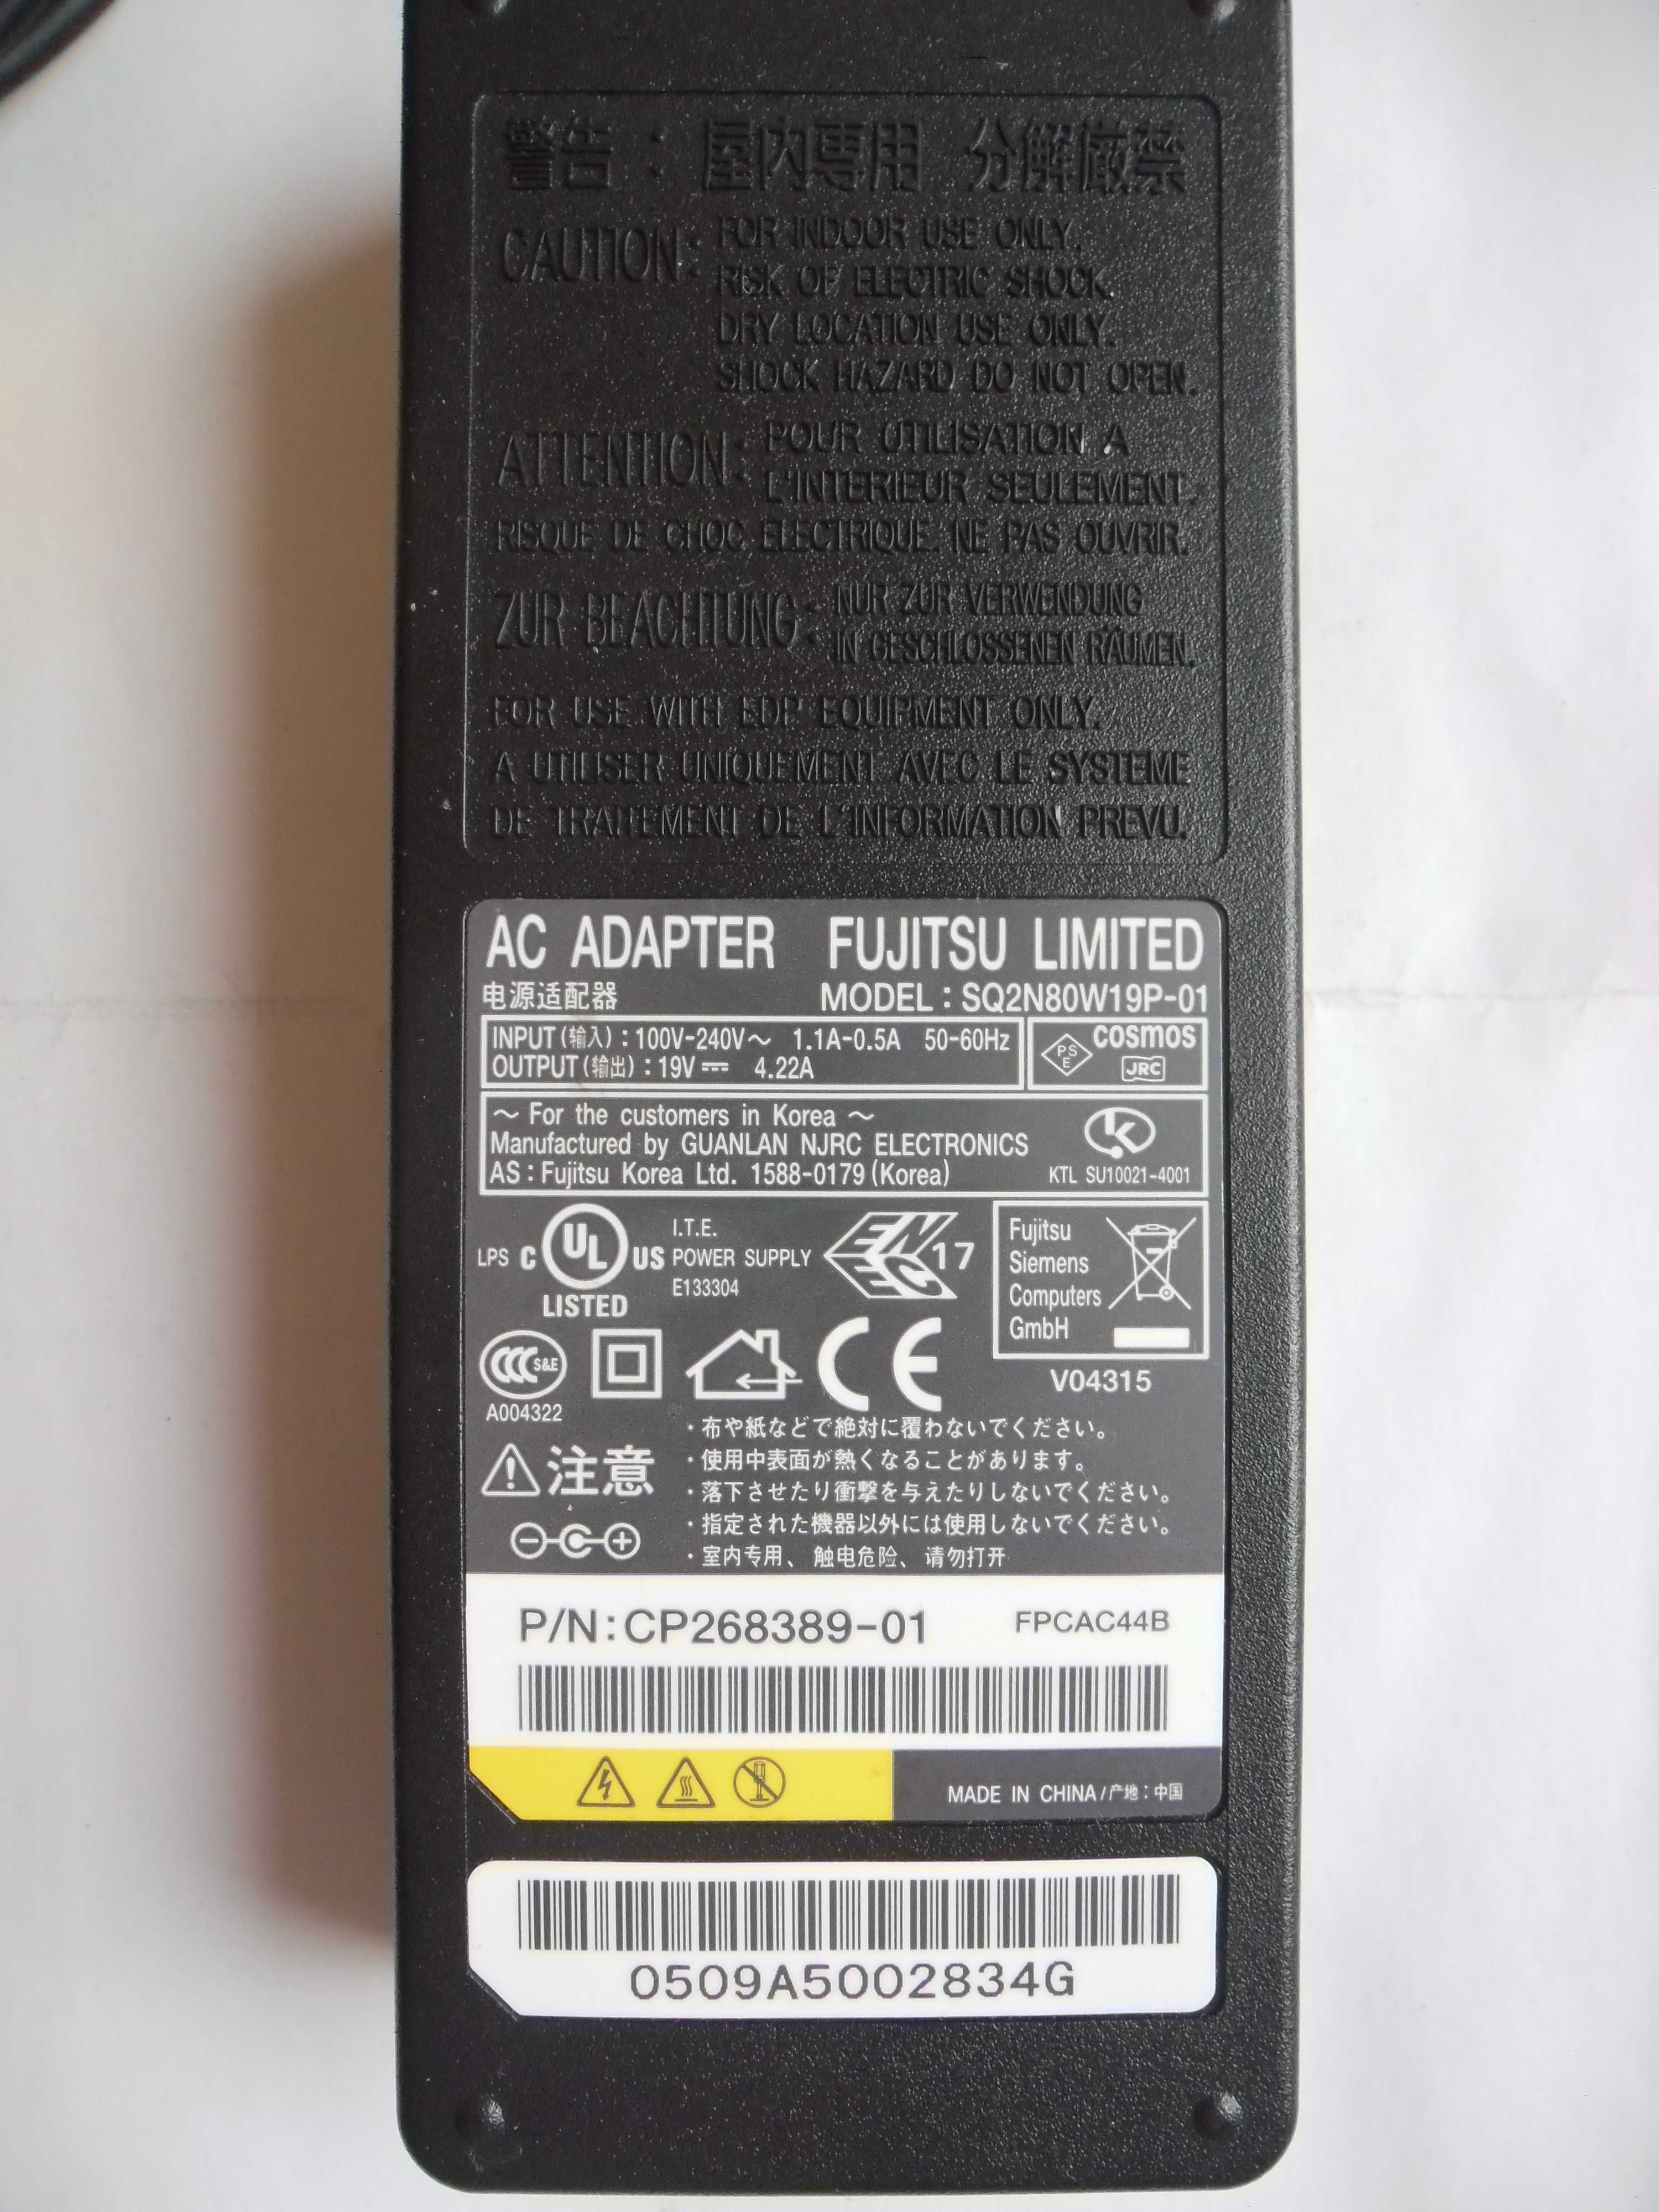 Zasilacz Adapter Fujitsu SQ2N80W19P-01 wtyk 5,5mm 2,5mm 19V 4,22A 80W